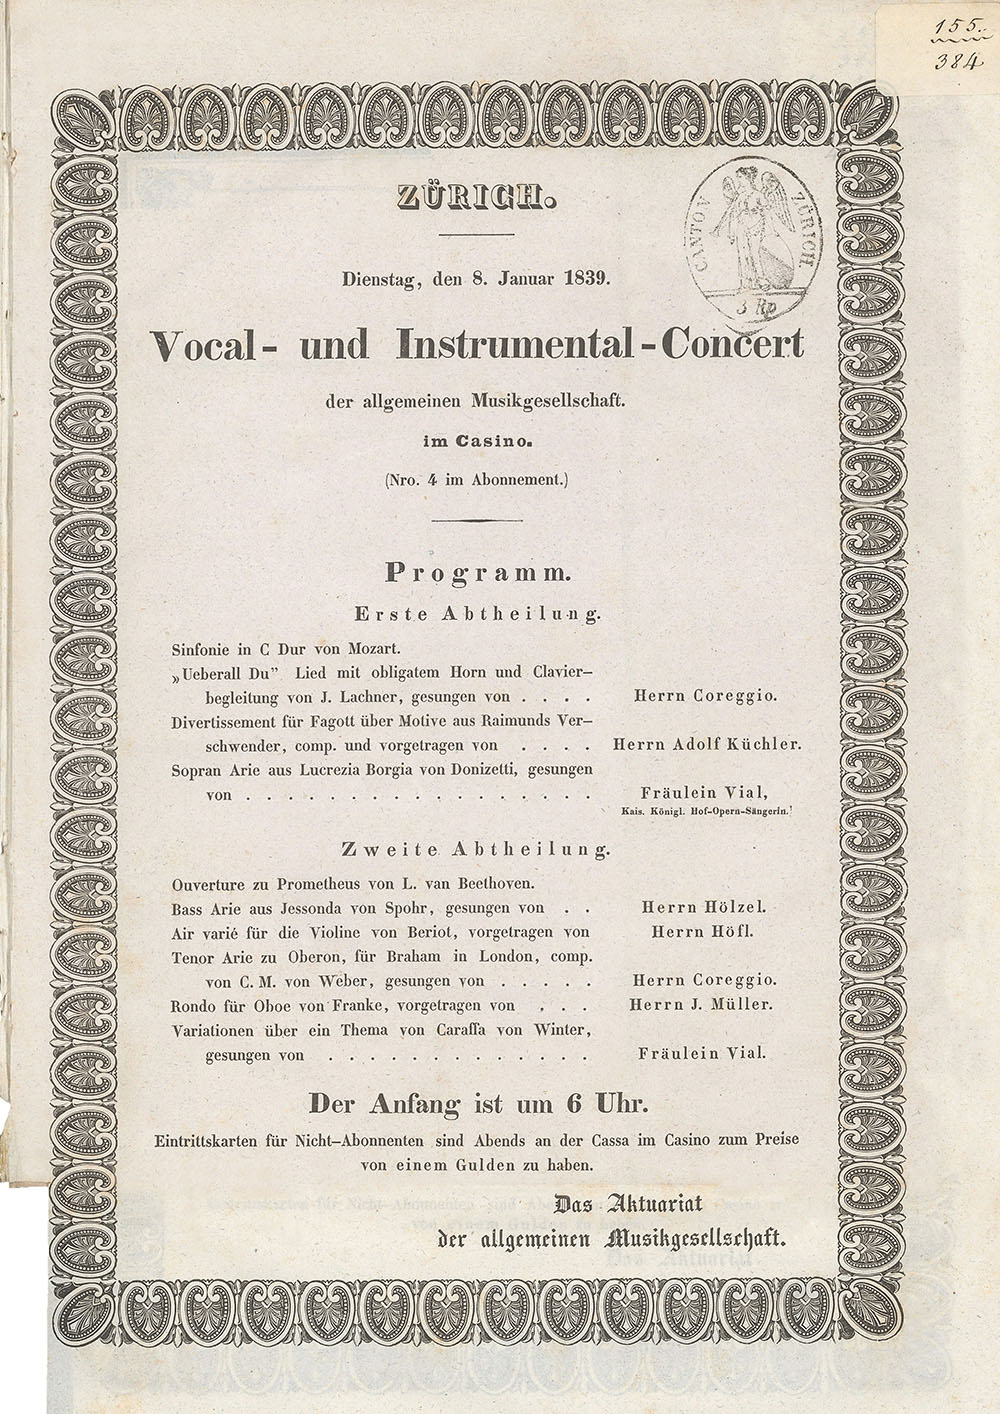 Ein Konzertprogramm der Allgemeinen Musikgesellschaft Zürich aus dem Jahre 1839 mit unterschiedlichen Stilen, Instrumenten und Gattungen. (Bild: ZB Zürich) 